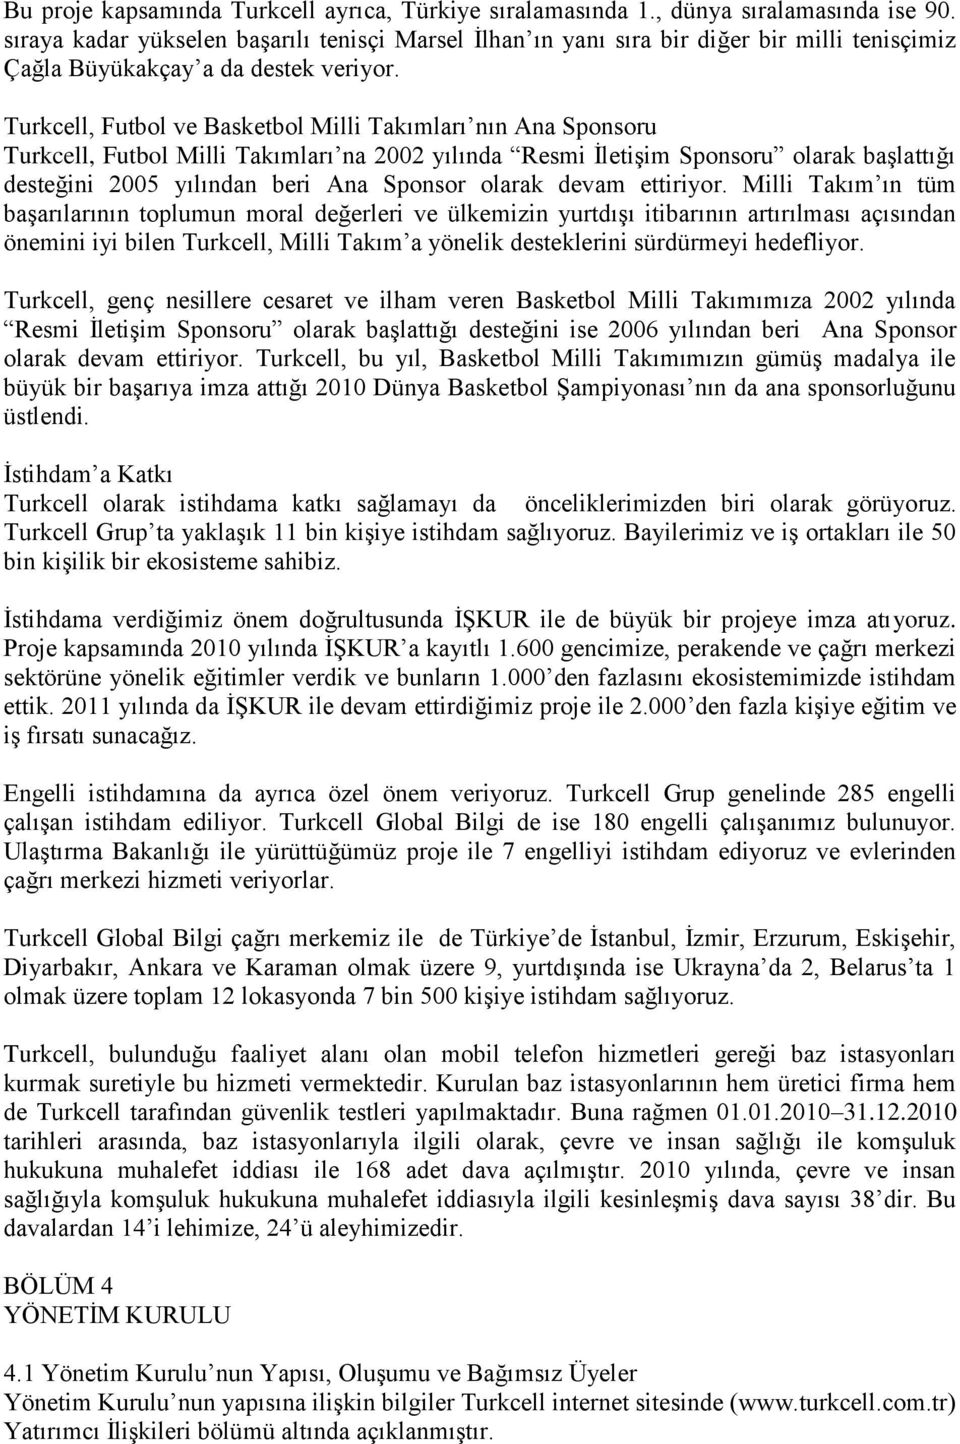 Turkcell, Futbol ve Basketbol Milli Takımları nın Ana Sponsoru Turkcell, Futbol Milli Takımları na 2002 yılında Resmi İletişim Sponsoru olarak başlattığı desteğini 2005 yılından beri Ana Sponsor